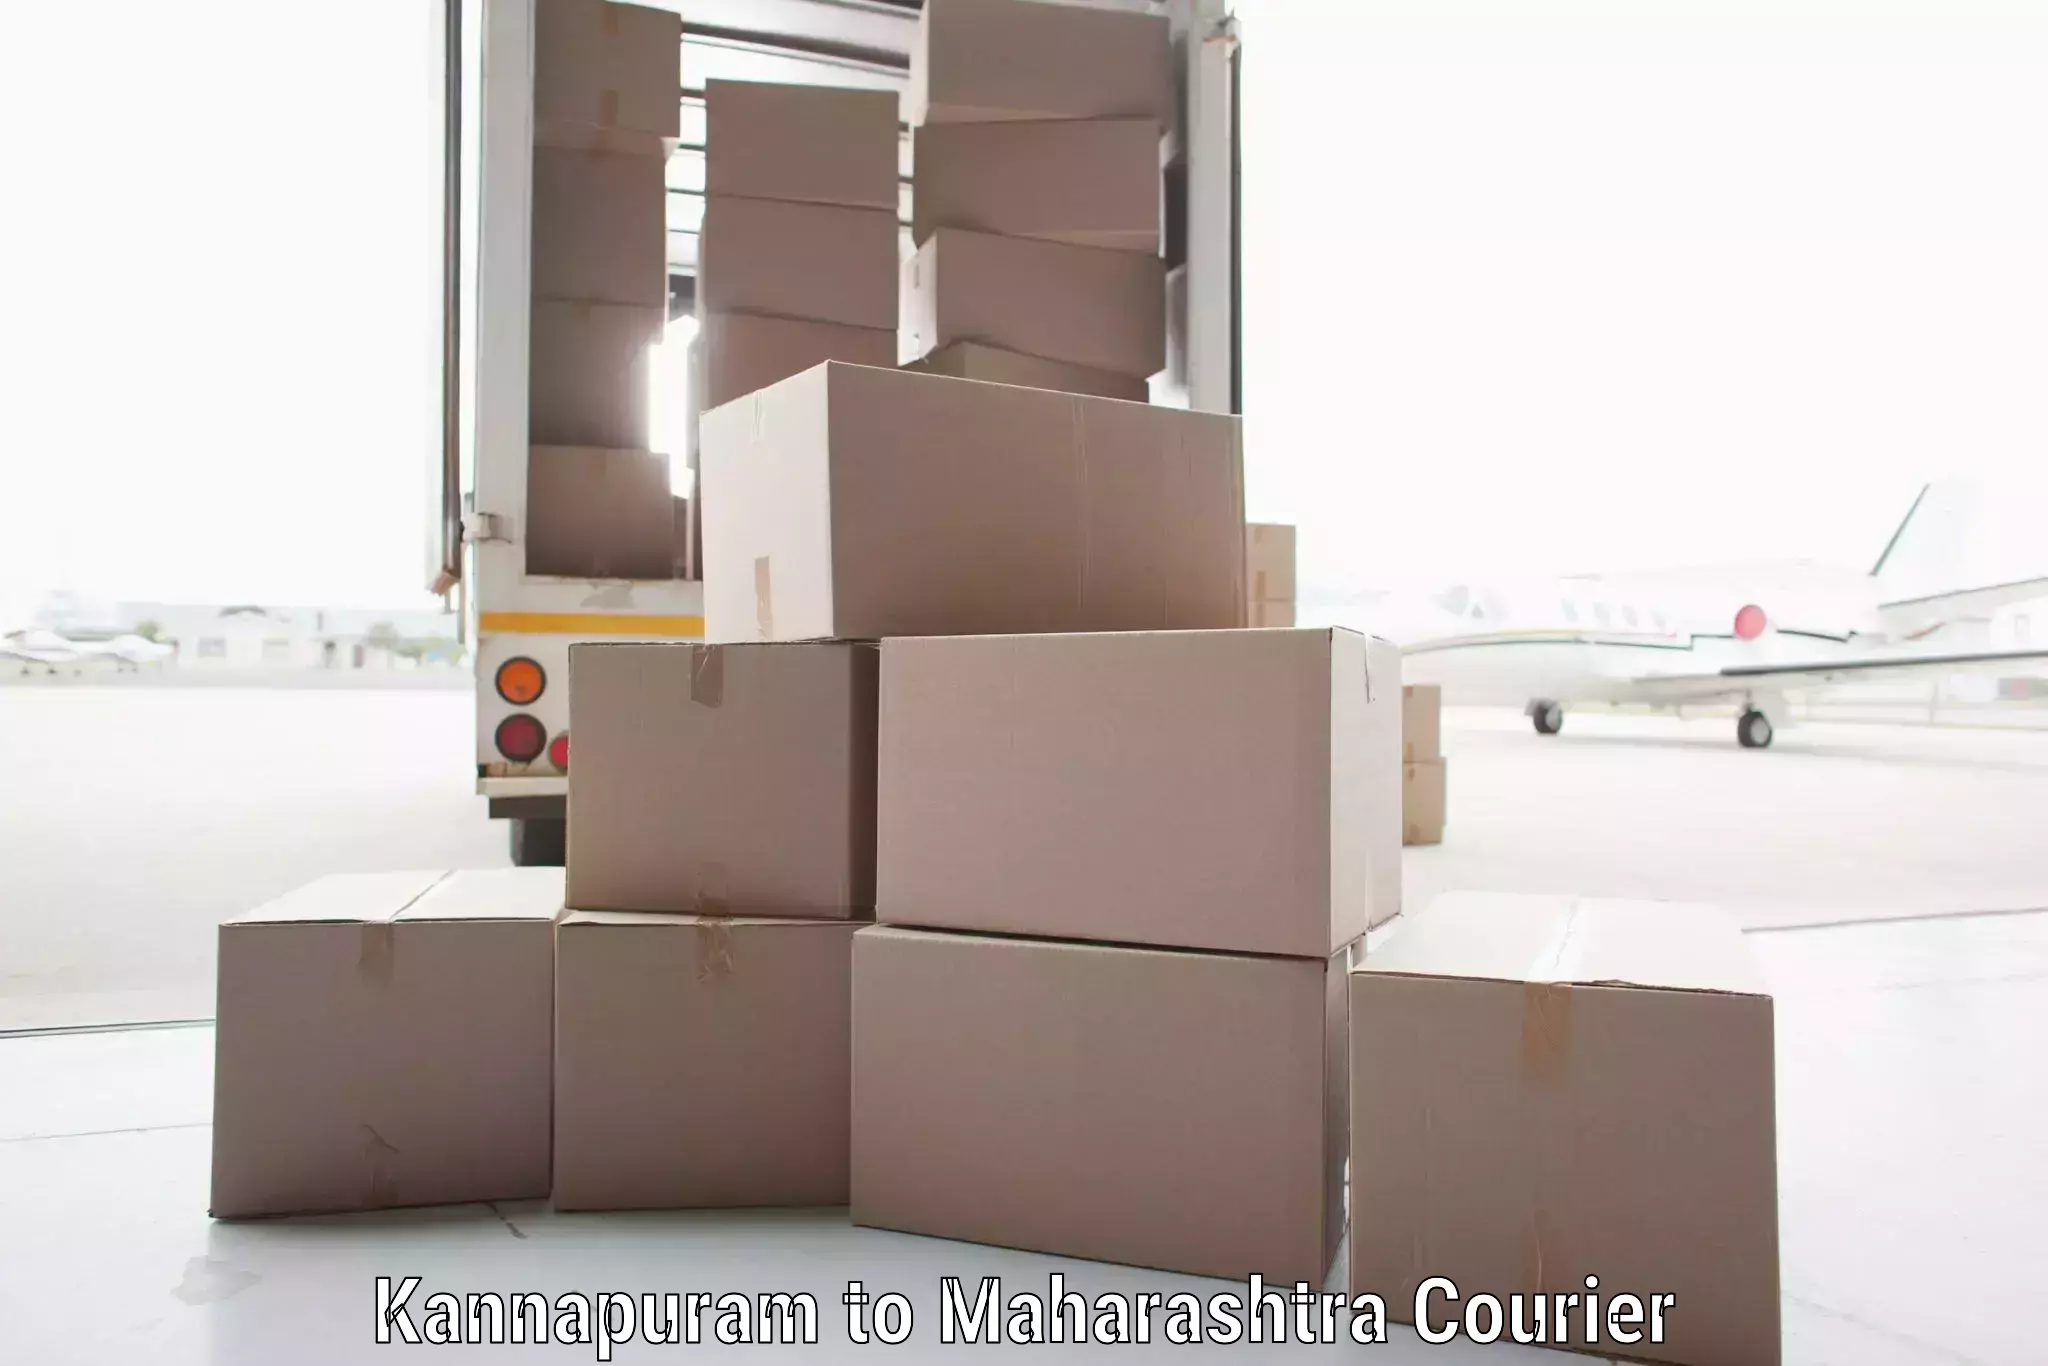 Cargo delivery service Kannapuram to Maharashtra